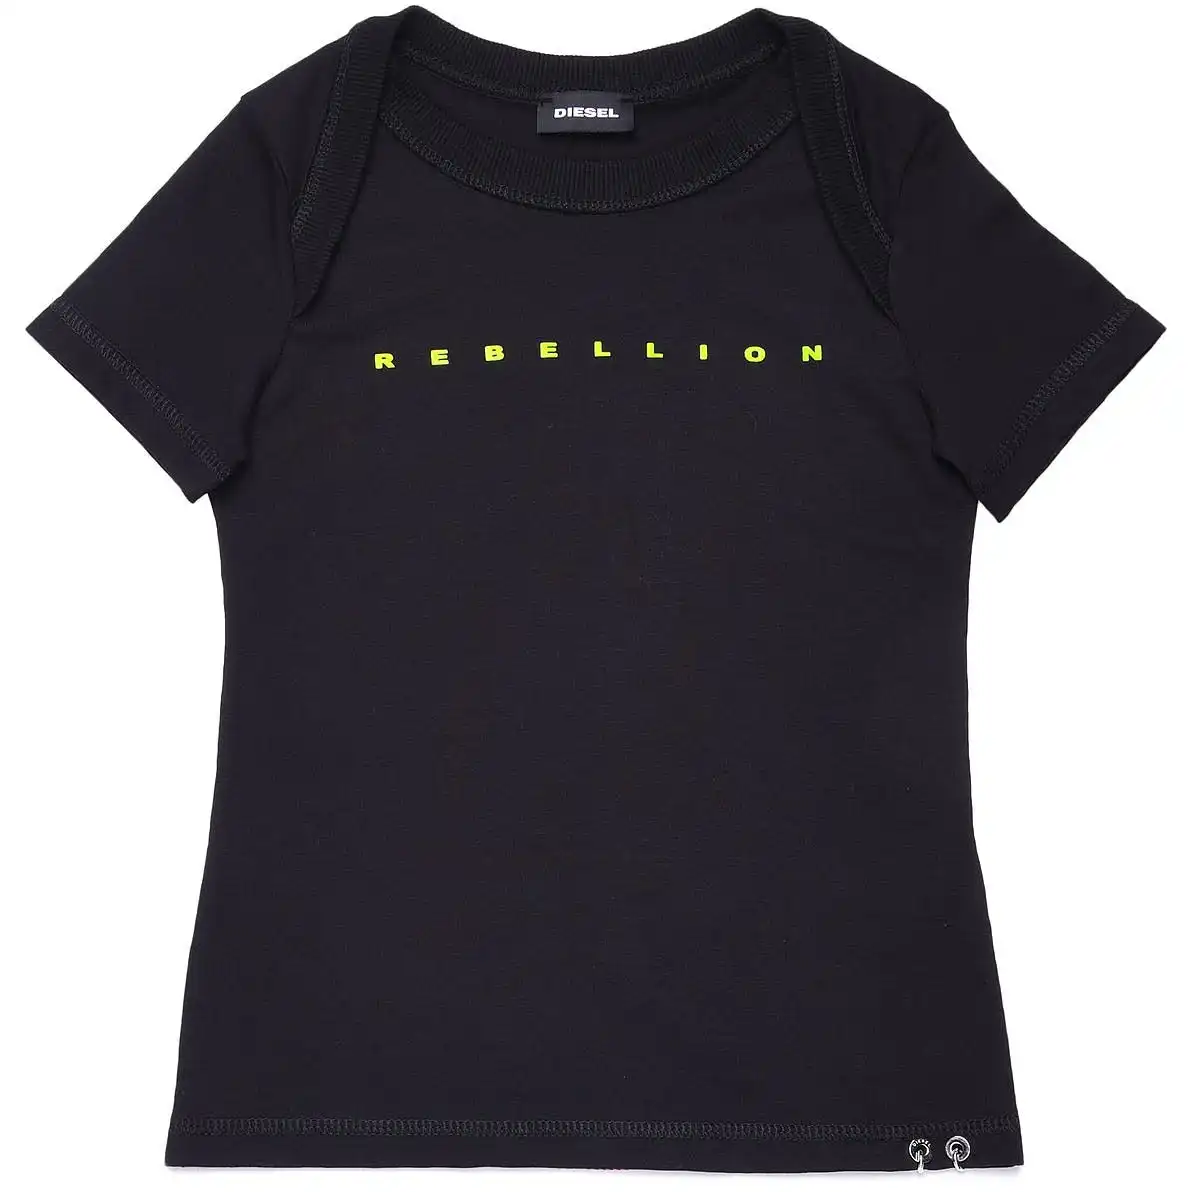 Diesel Girls Black 'Rebellion' T-Shirt